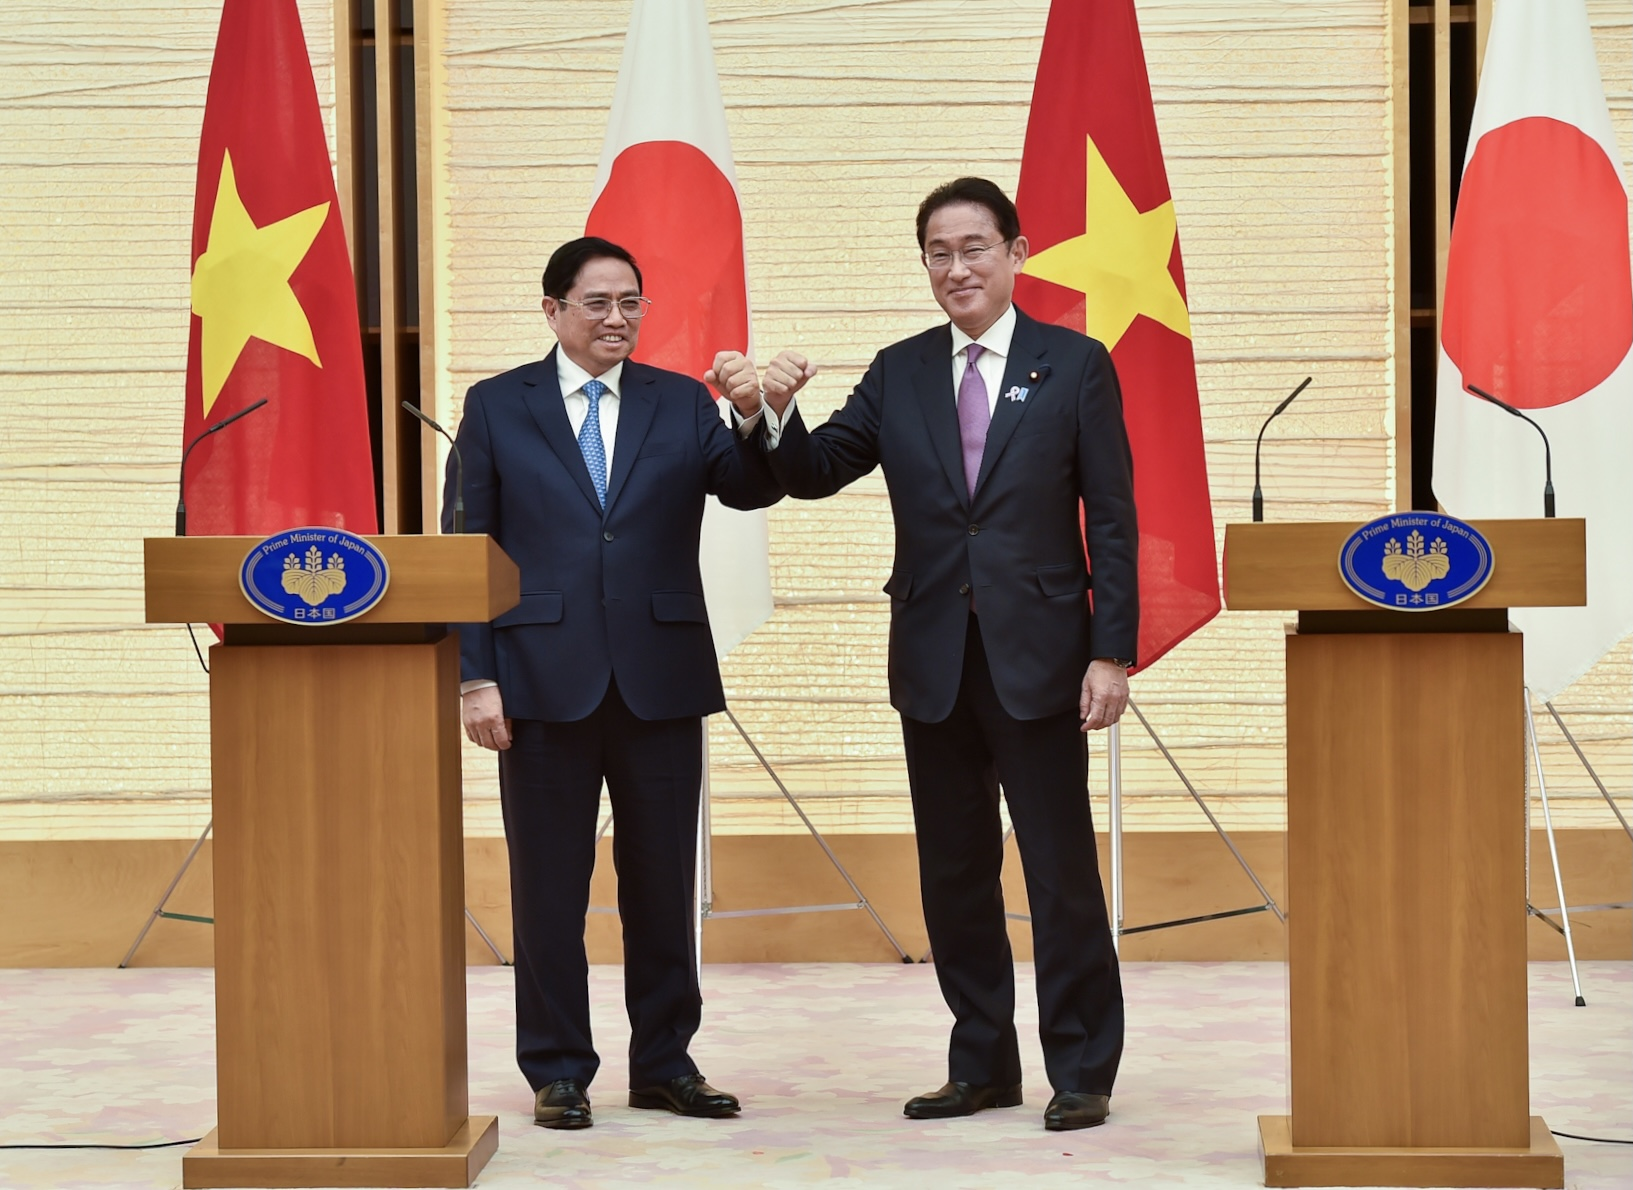 Hợp tác Việt Nam - Nhật Bản: Việt Nam và Nhật Bản là những đối tác chiến lược của nhau. Hai quốc gia đã đạt được nhiều thỏa thuận hợp tác quan trọng, tạo động lực lớn để phát triển kinh tế, công nghệ và đối ngoại. Hợp tác ngày càng sâu rộng và đa dạng, mang lại nhiều cơ hội và lợi ích cho hai bên.